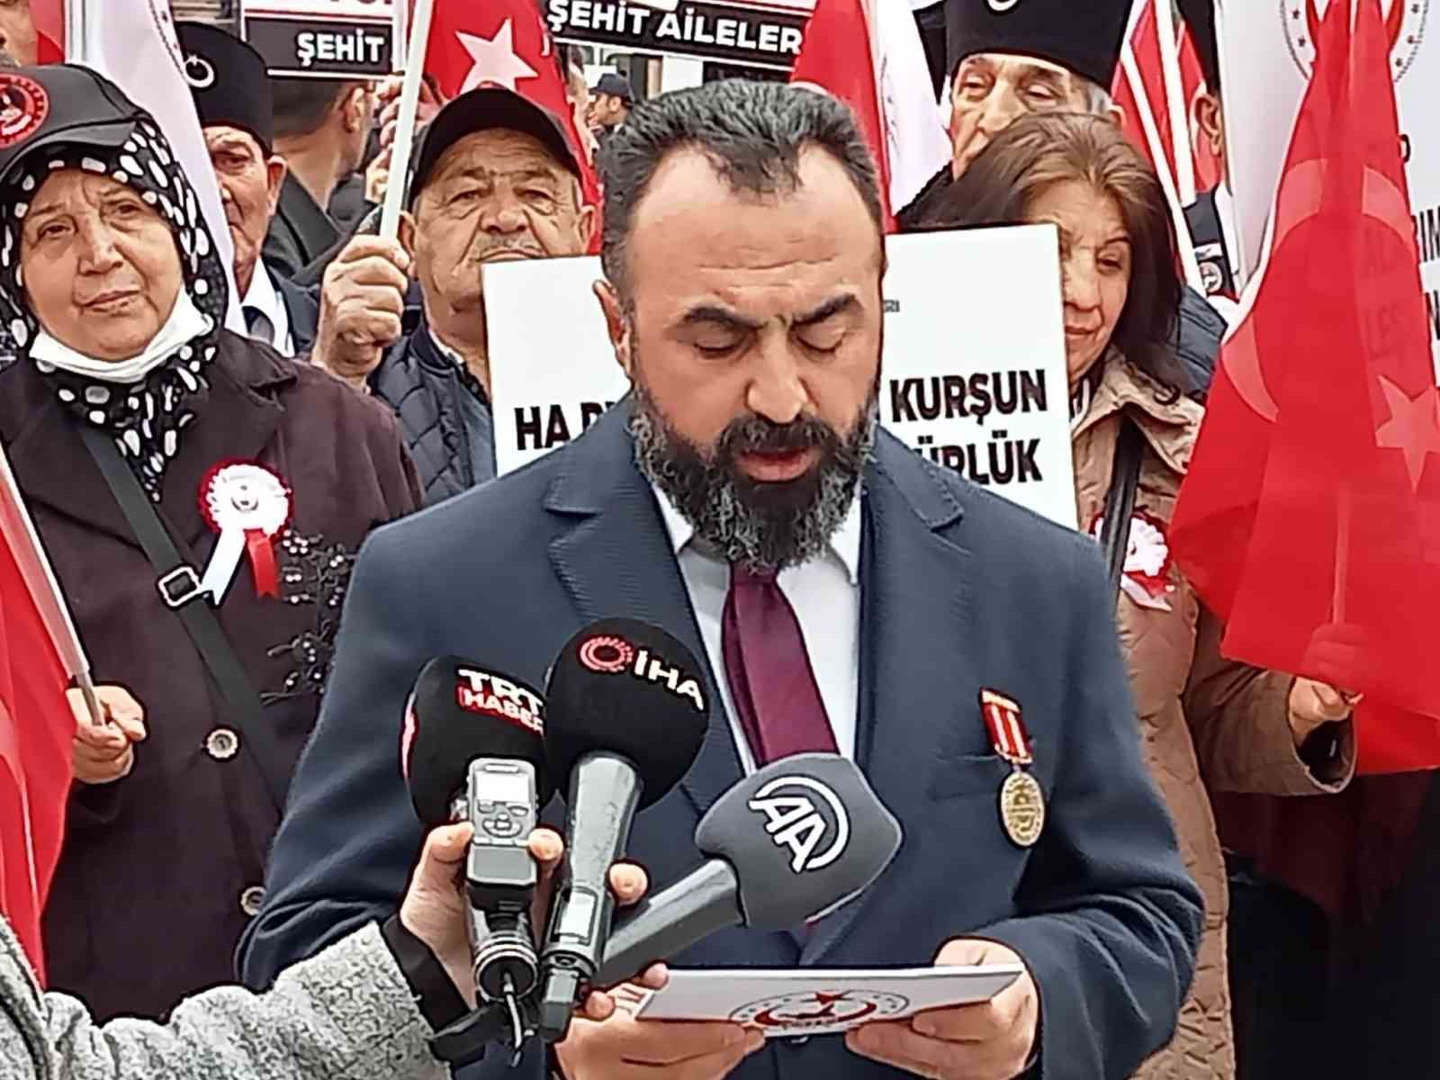 Şehit ve gazi ailelerinden Kılıçdaroğlu’na tepki: “Türk milletine ihanetten derhal geri dönmelisiniz”